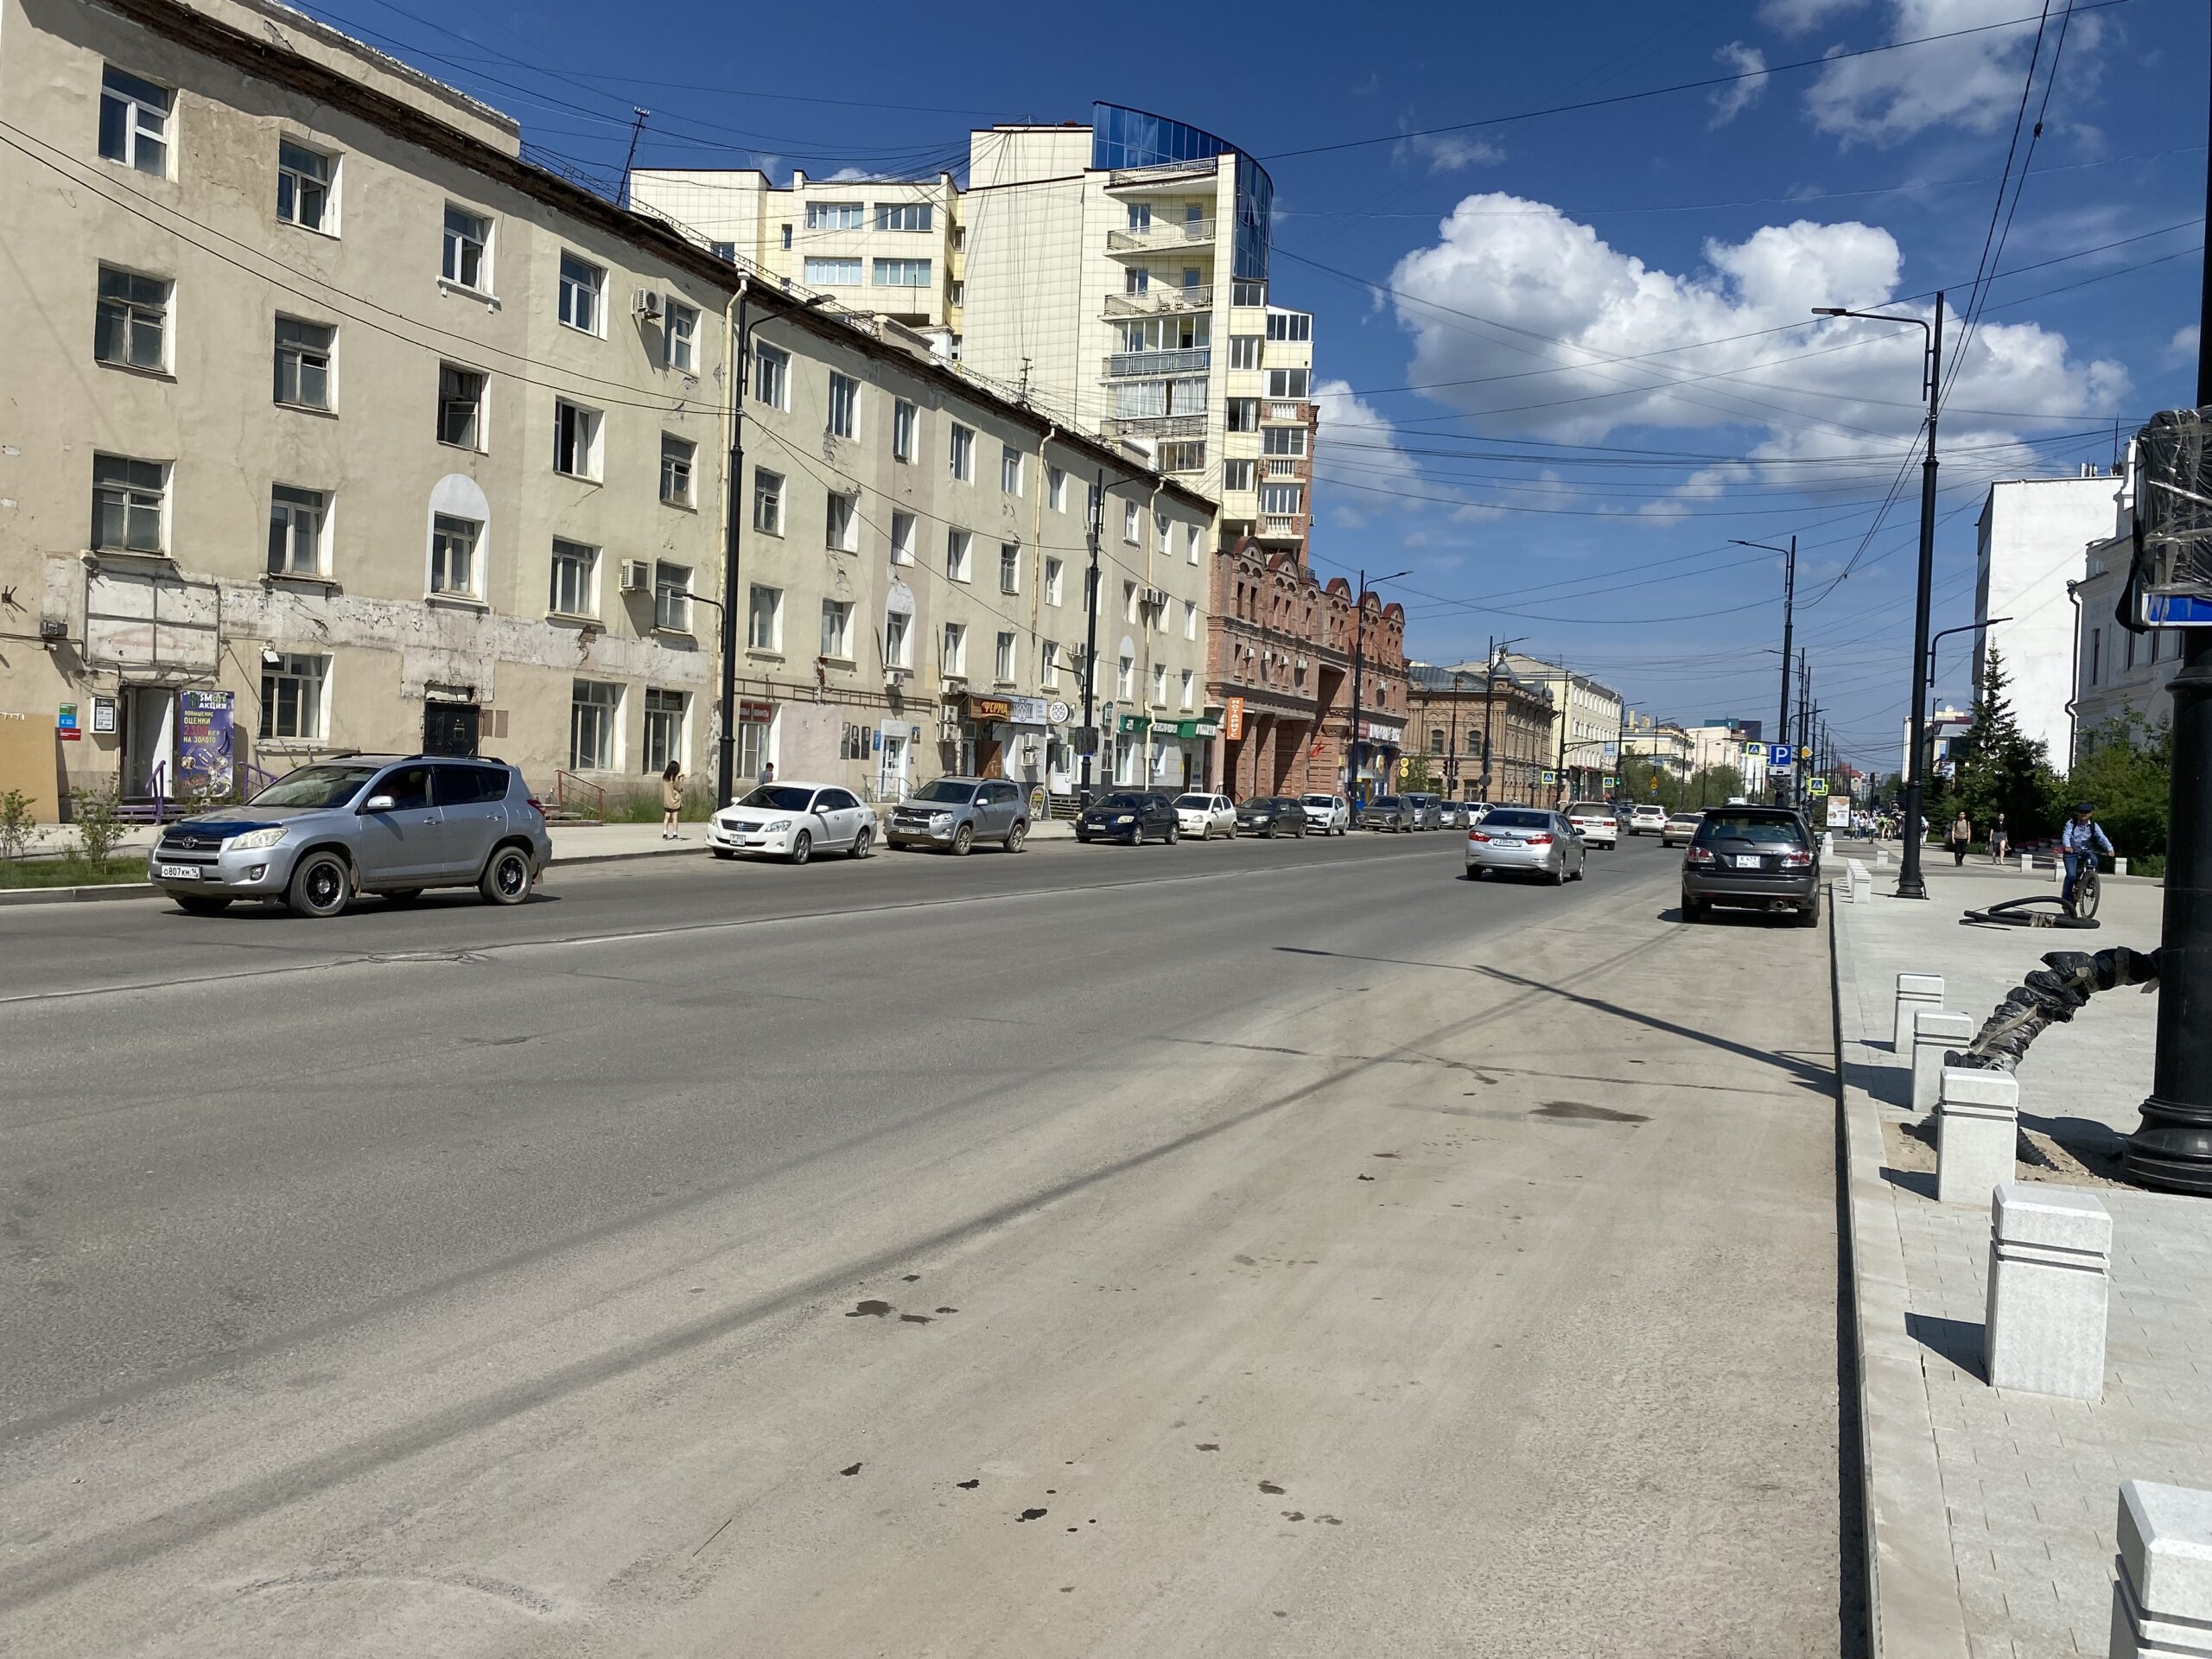 Проспект Ленина обновляют в соответствии с дизайн-кодом Якутска